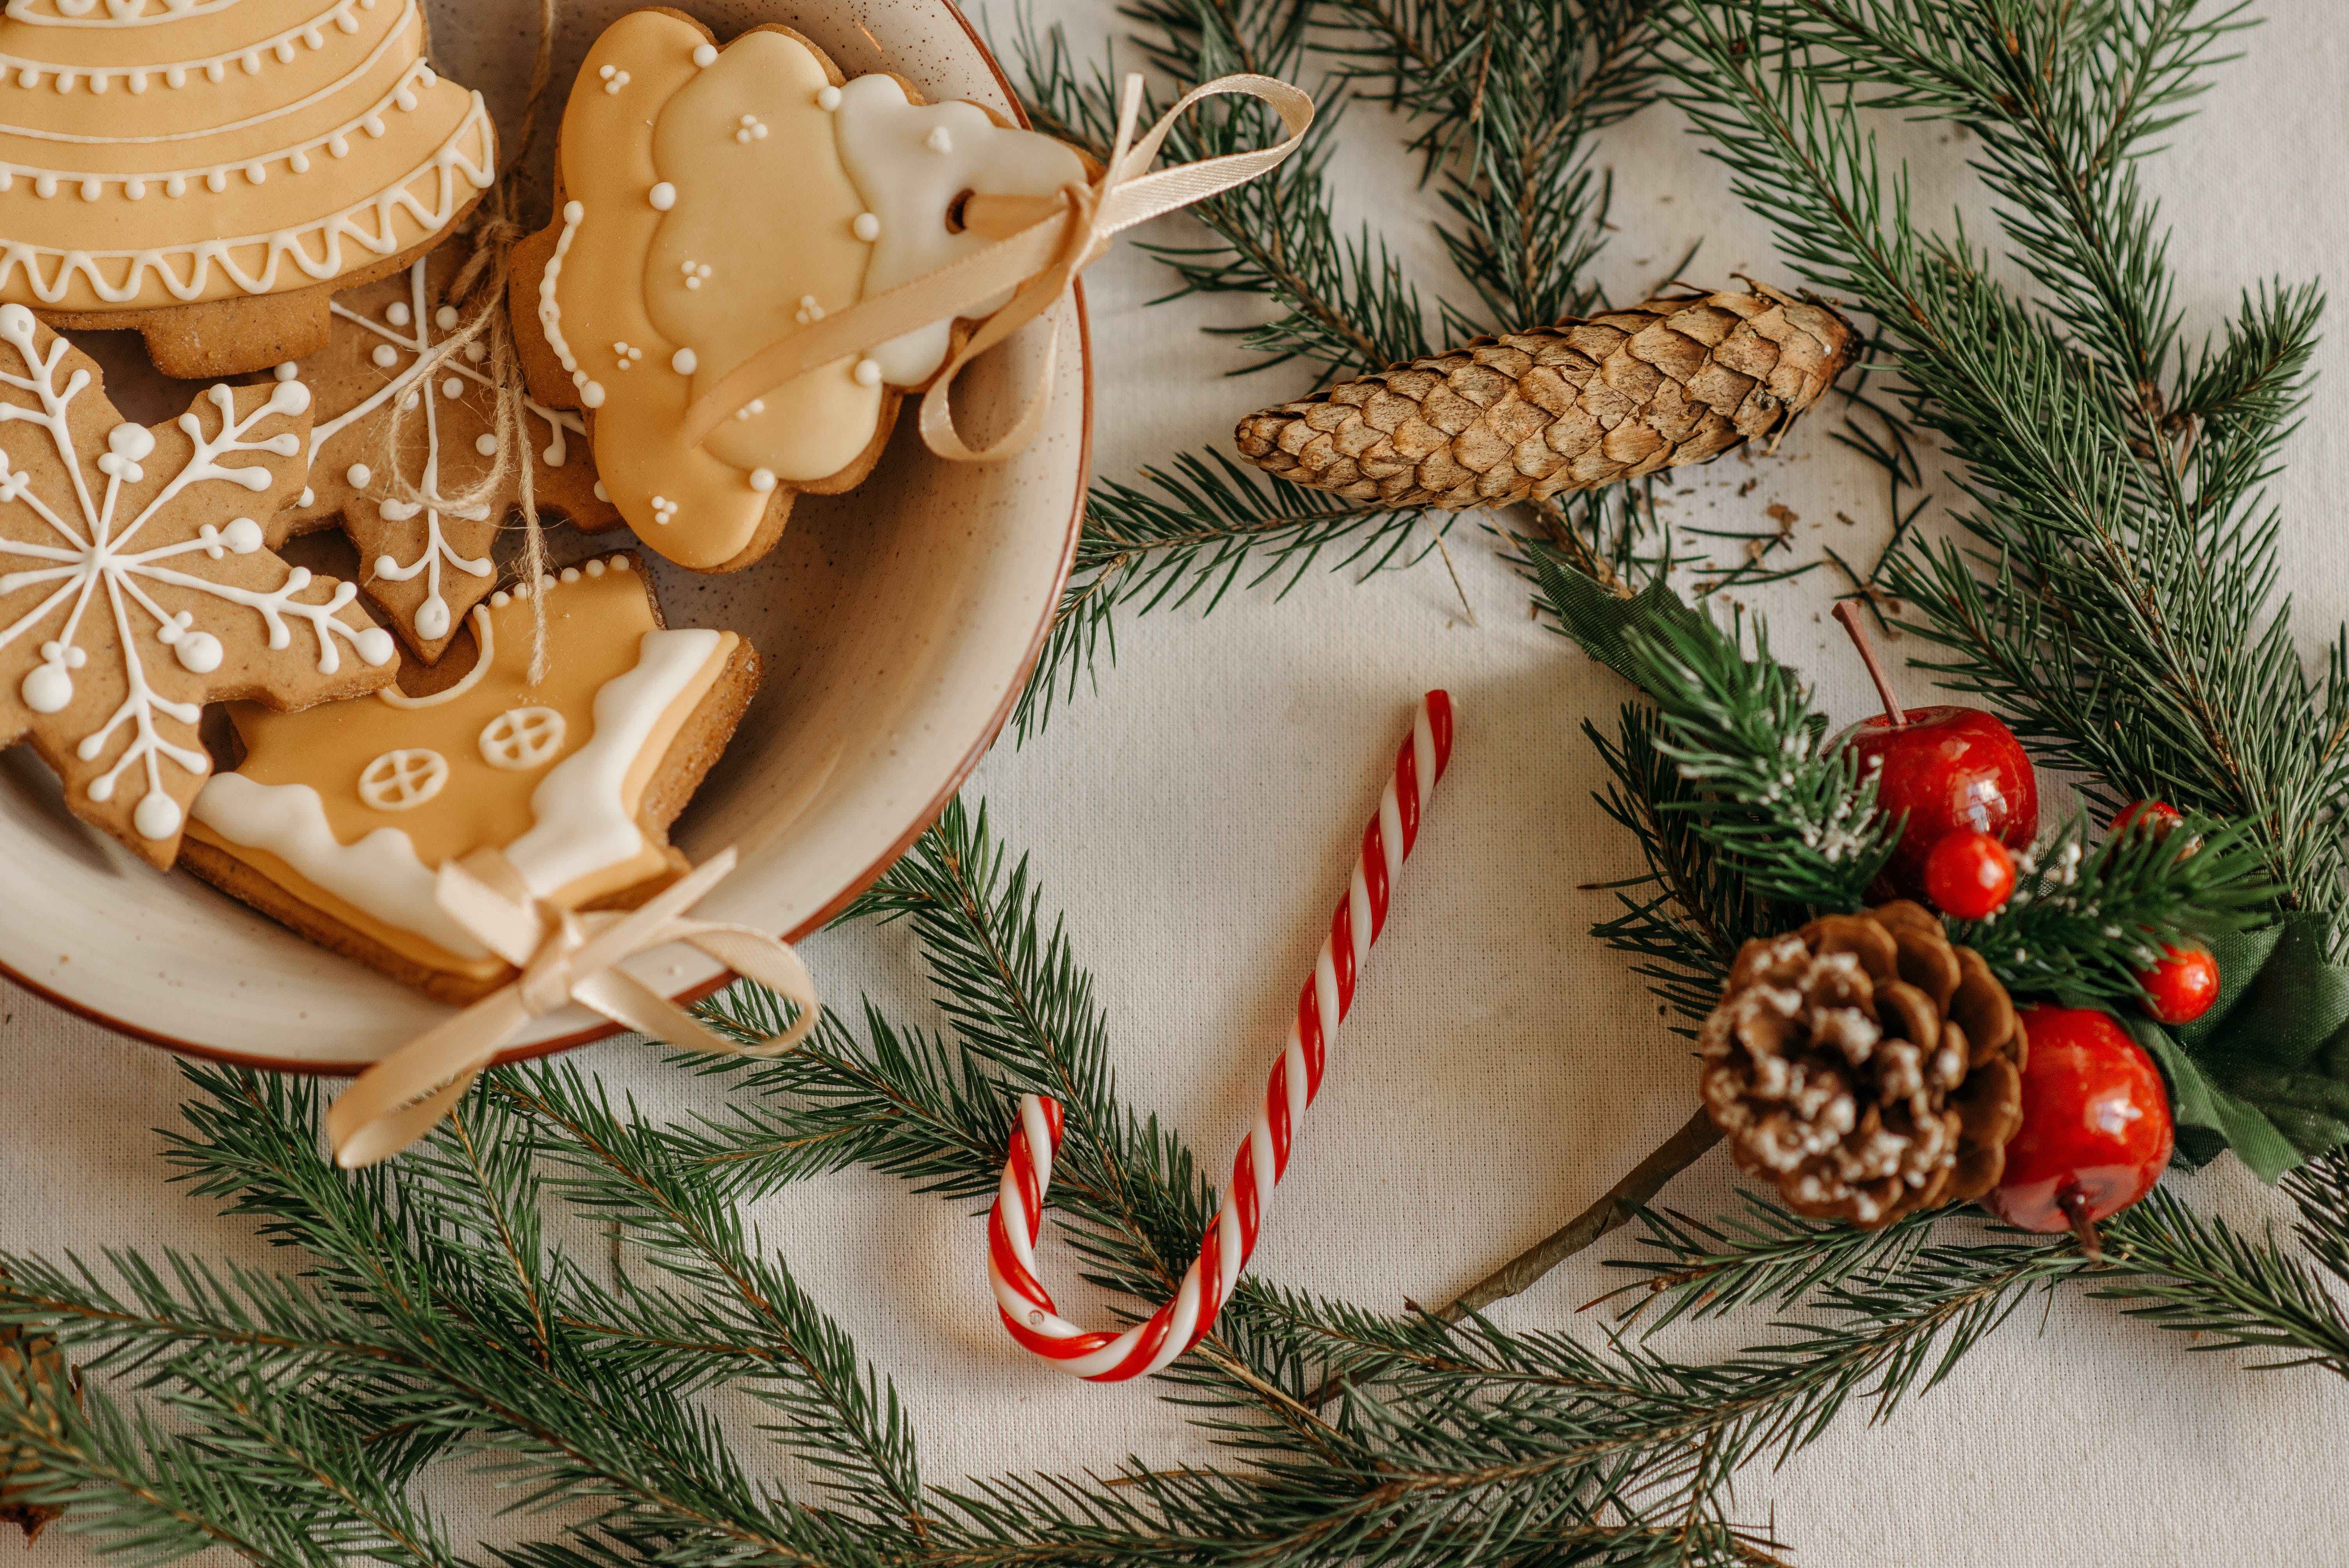 Les 3 receptes de galetes nadalenques que pots tastar aquestes festes